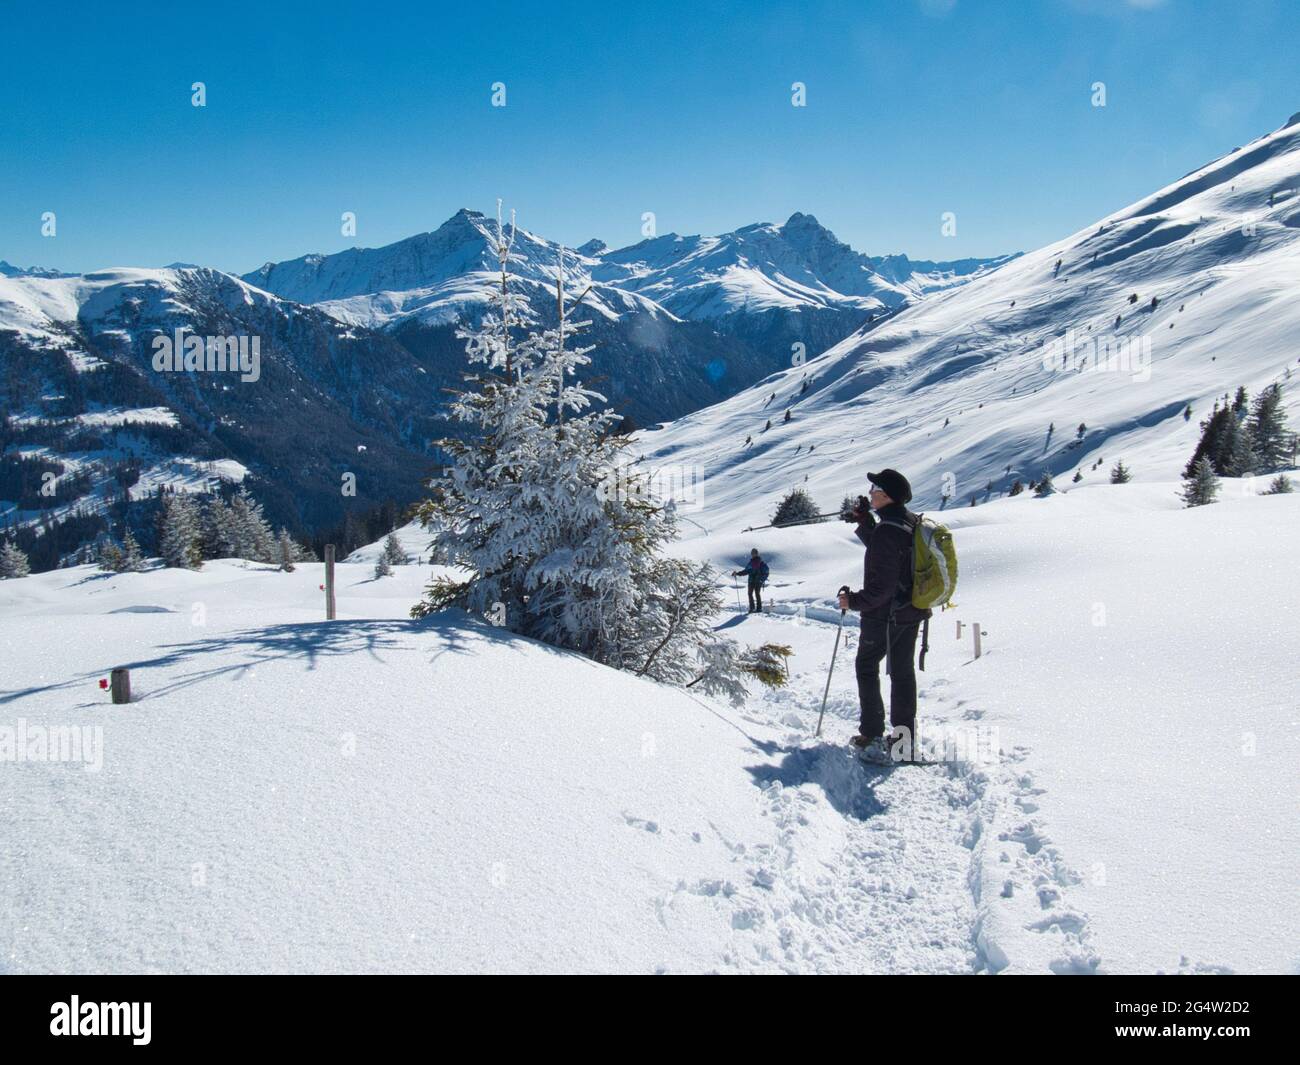 Una donna che cammina con le racchette da neve si ferma per ammirare la vista della valle di Safeiennel Cantone di Graubunden, nelle Alpi svizzere Foto Stock